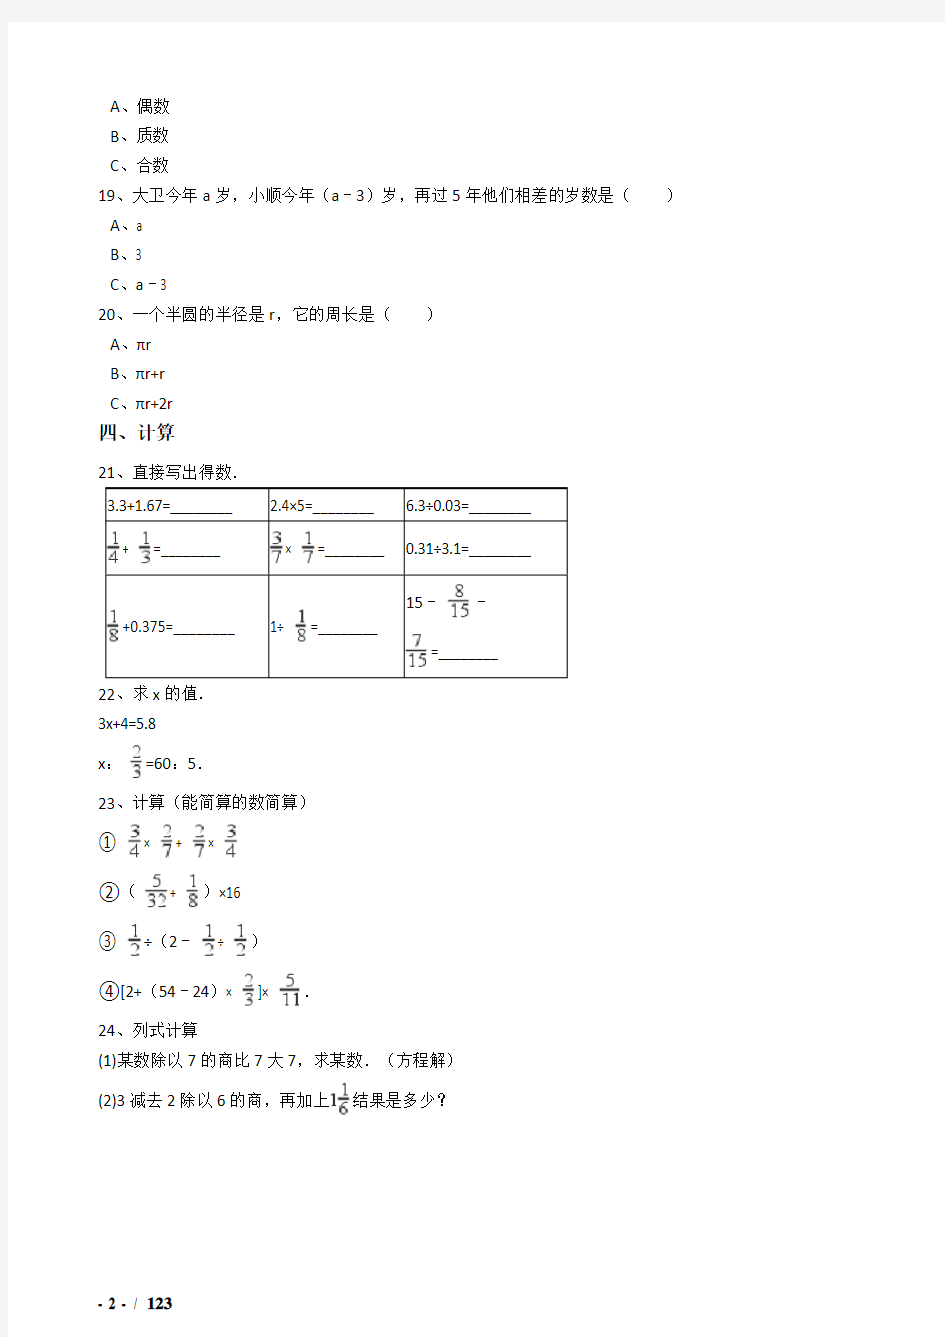 2018年武汉市小升初数学模拟试题(共10套)详细答案